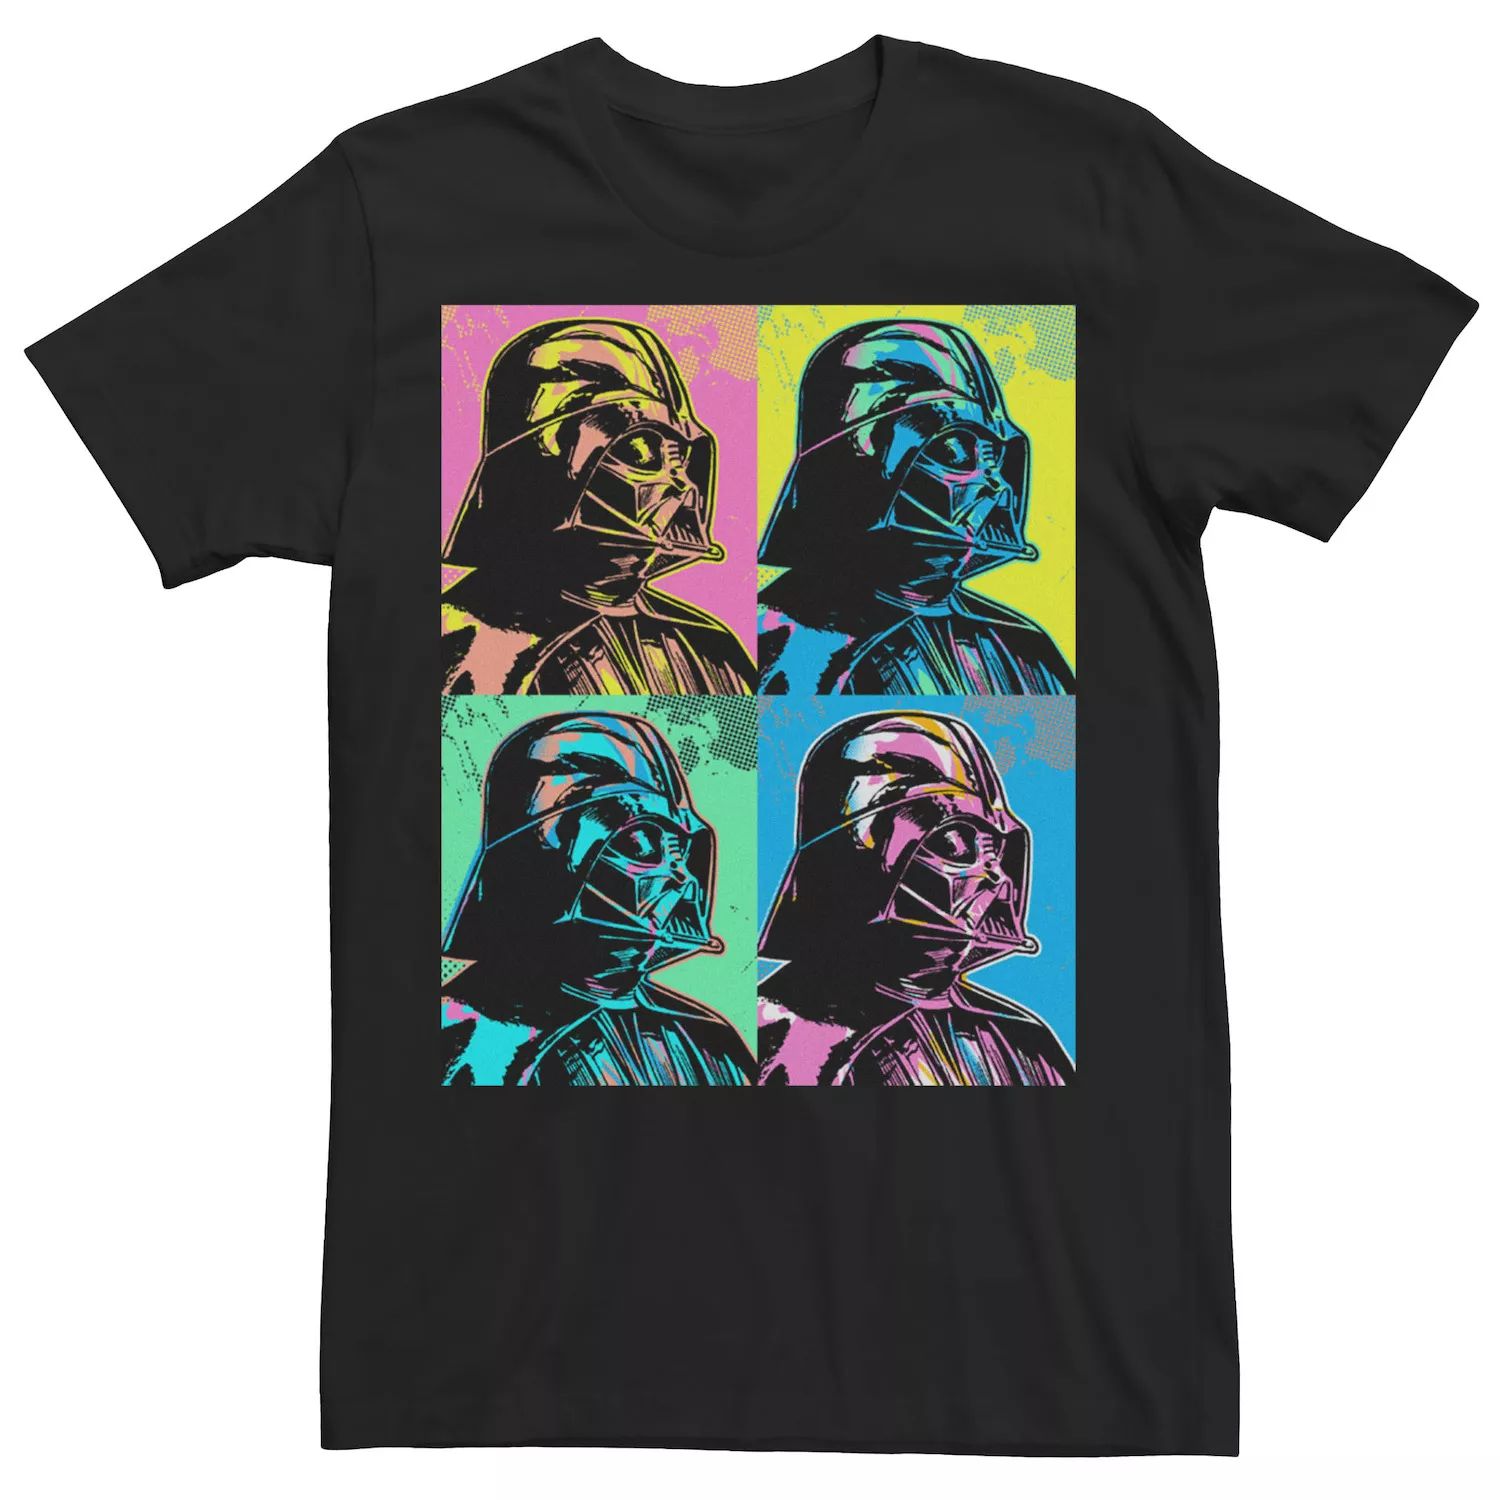 Мужская футболка с цветной портретной панелью «Звездные войны Дарт Вейдер» Star Wars, черный